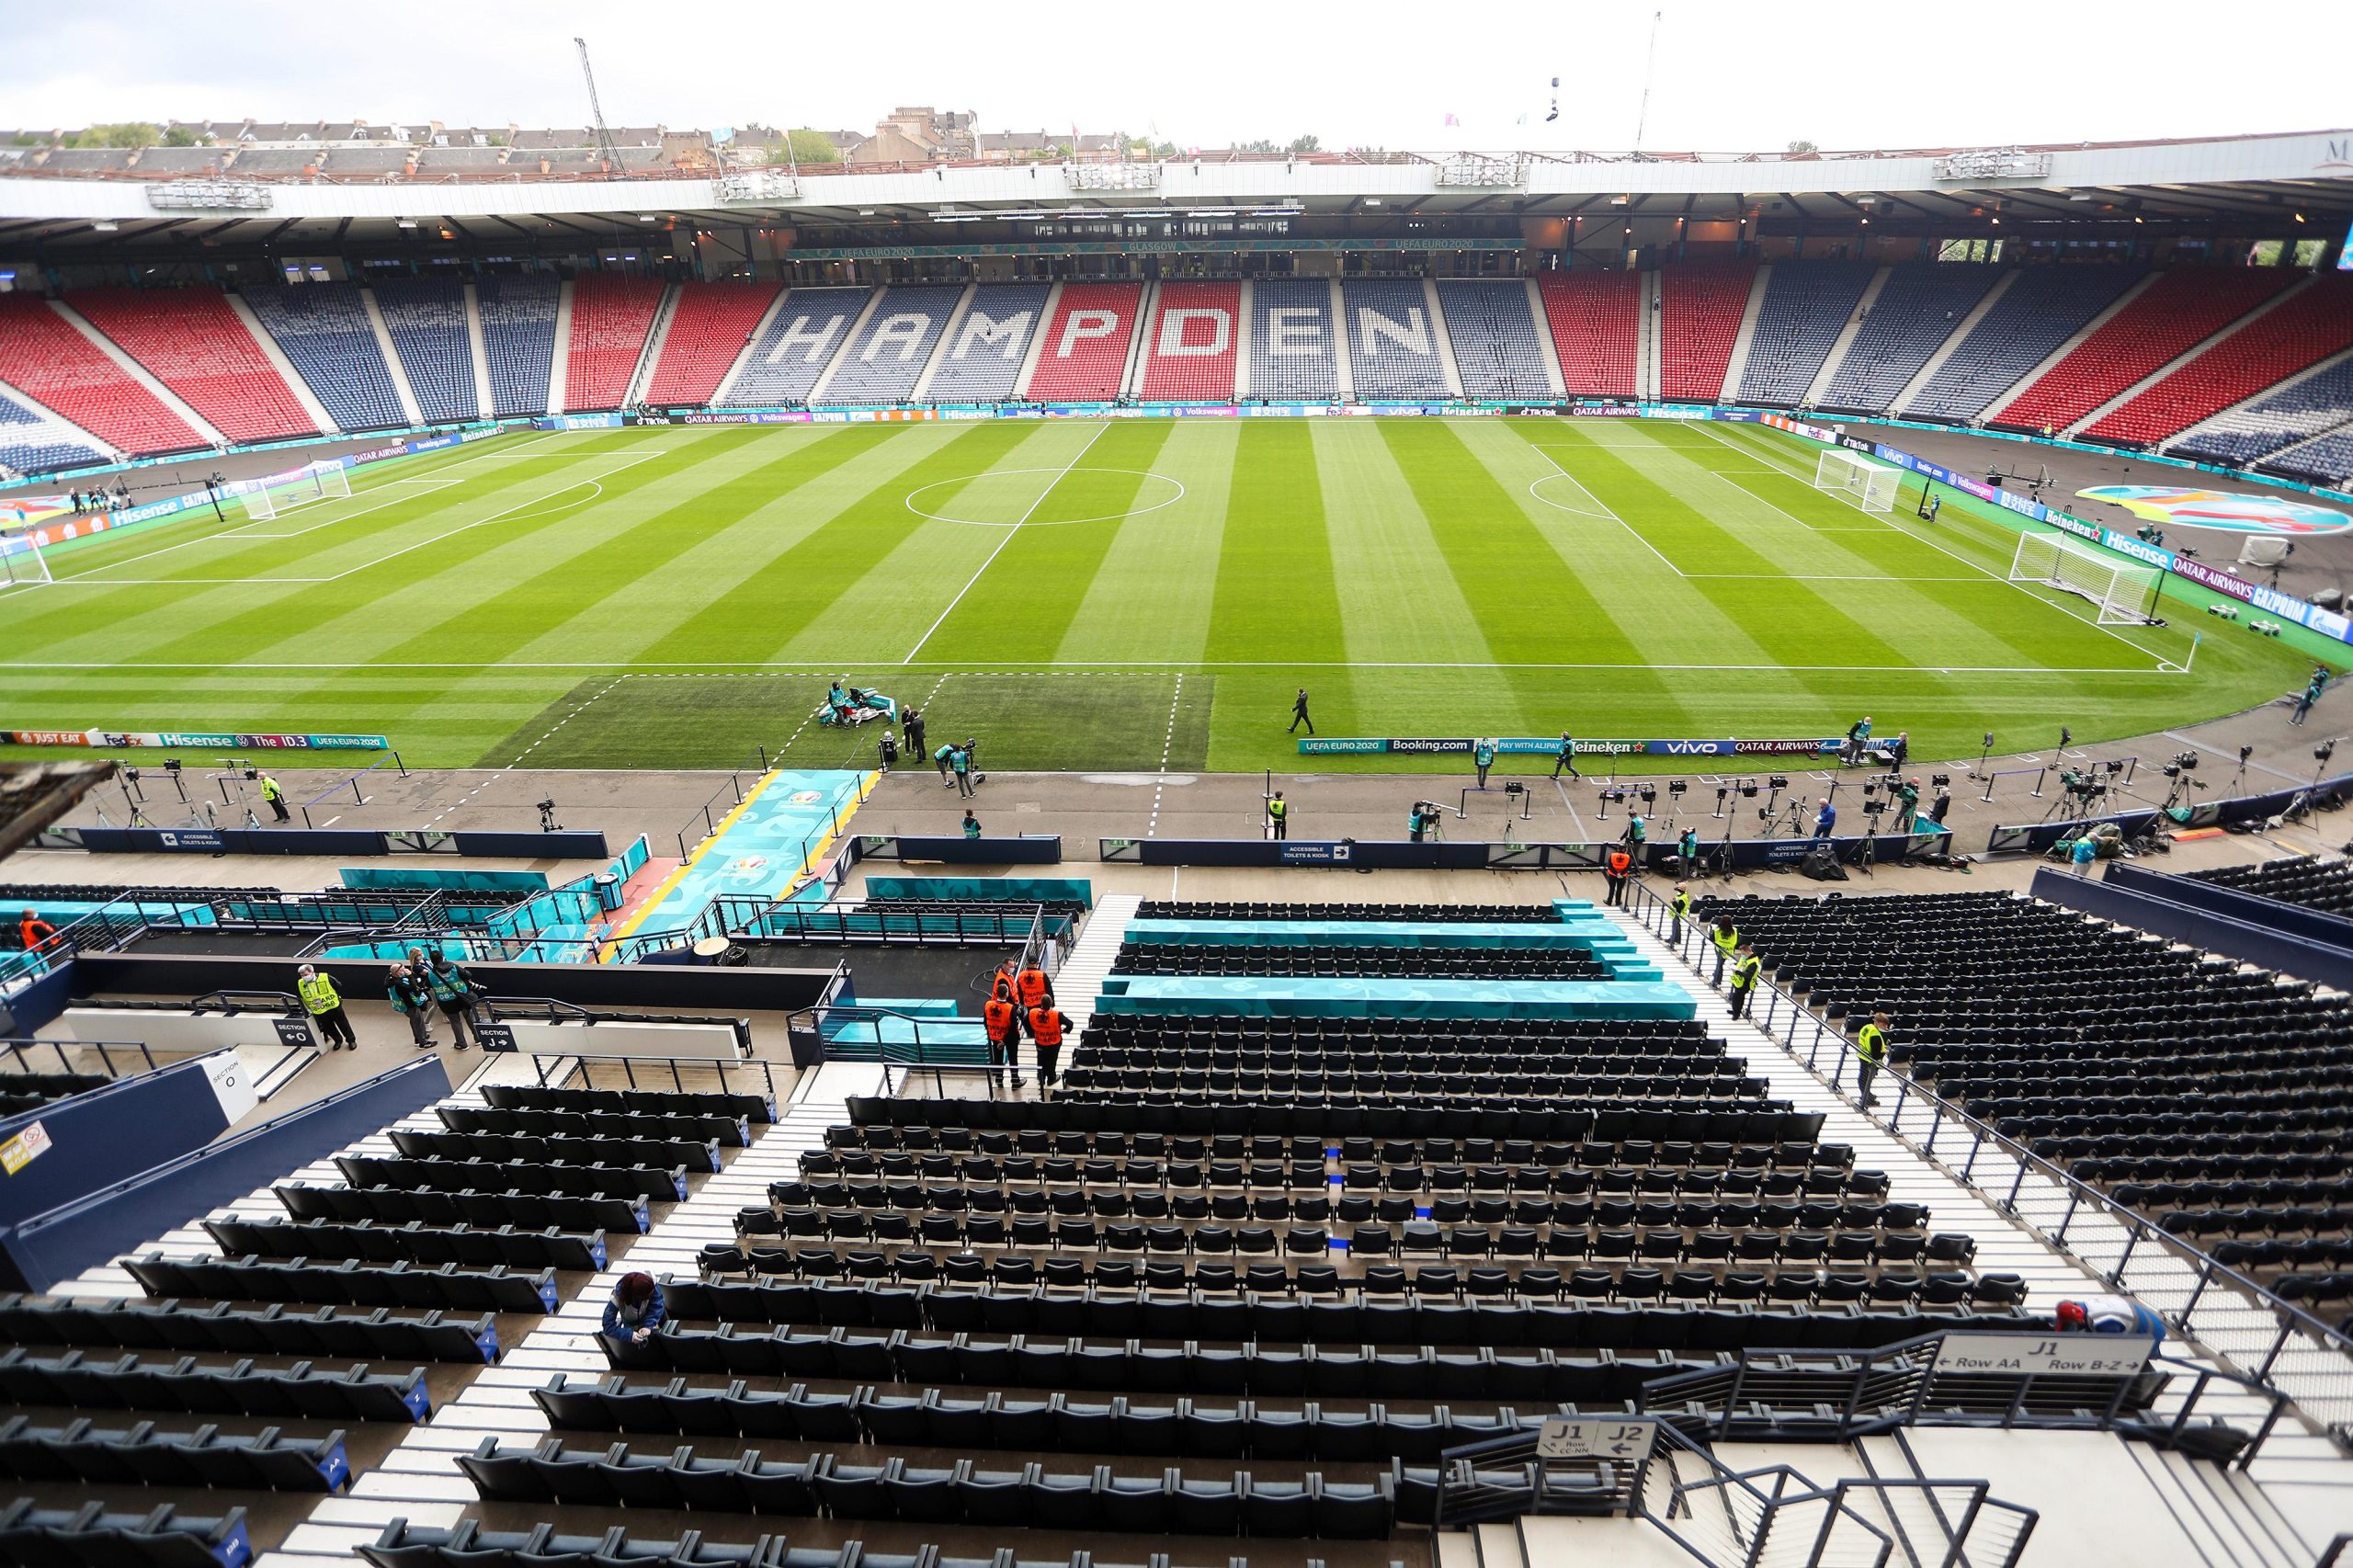 14.06.2021., Glasgow, Engleska - Hampden park. Hampden Park je stadion u Glasgowu i Skotski nacionalni stadion. Koristi se za potrebe kluba Queens Park FC i skotske nogometne reprezentacije. Takodjer, koristi se za glazbene koncerte i ostale sportske dogadjaje. Hampden je sagradjen 1903. godine, iako se smatra da je prvotni stadion puno stariji. Poznat je diljem svijeta kao simbol i dom nogometa, a svoju stogodisnjicu je proslavio 31. listopada 2003. Stadion sadrzi i urede Skotskog nogometnog stadiona, Premier lige i ostalih. Tijekom OI 2021, Hampden Park ugostio je  neke od utakmica u ranom dijelu nogometnog natjecanja. Uz to, bio je domacin mnogih finala KupaLigePrvaka(1960., 1976., 2020.) i Kupa UEFE 2007 godine. Na EURU 2020 ugostit ce tri utakmice grupne faze te jednu utakmicu sesnaestine finala. Hrvatska igra dvije utakmice grupne faze na stadionu Hampden park sa Ceskom i Skotskom. 
Photo: Luka Stanzl/PIXSELL